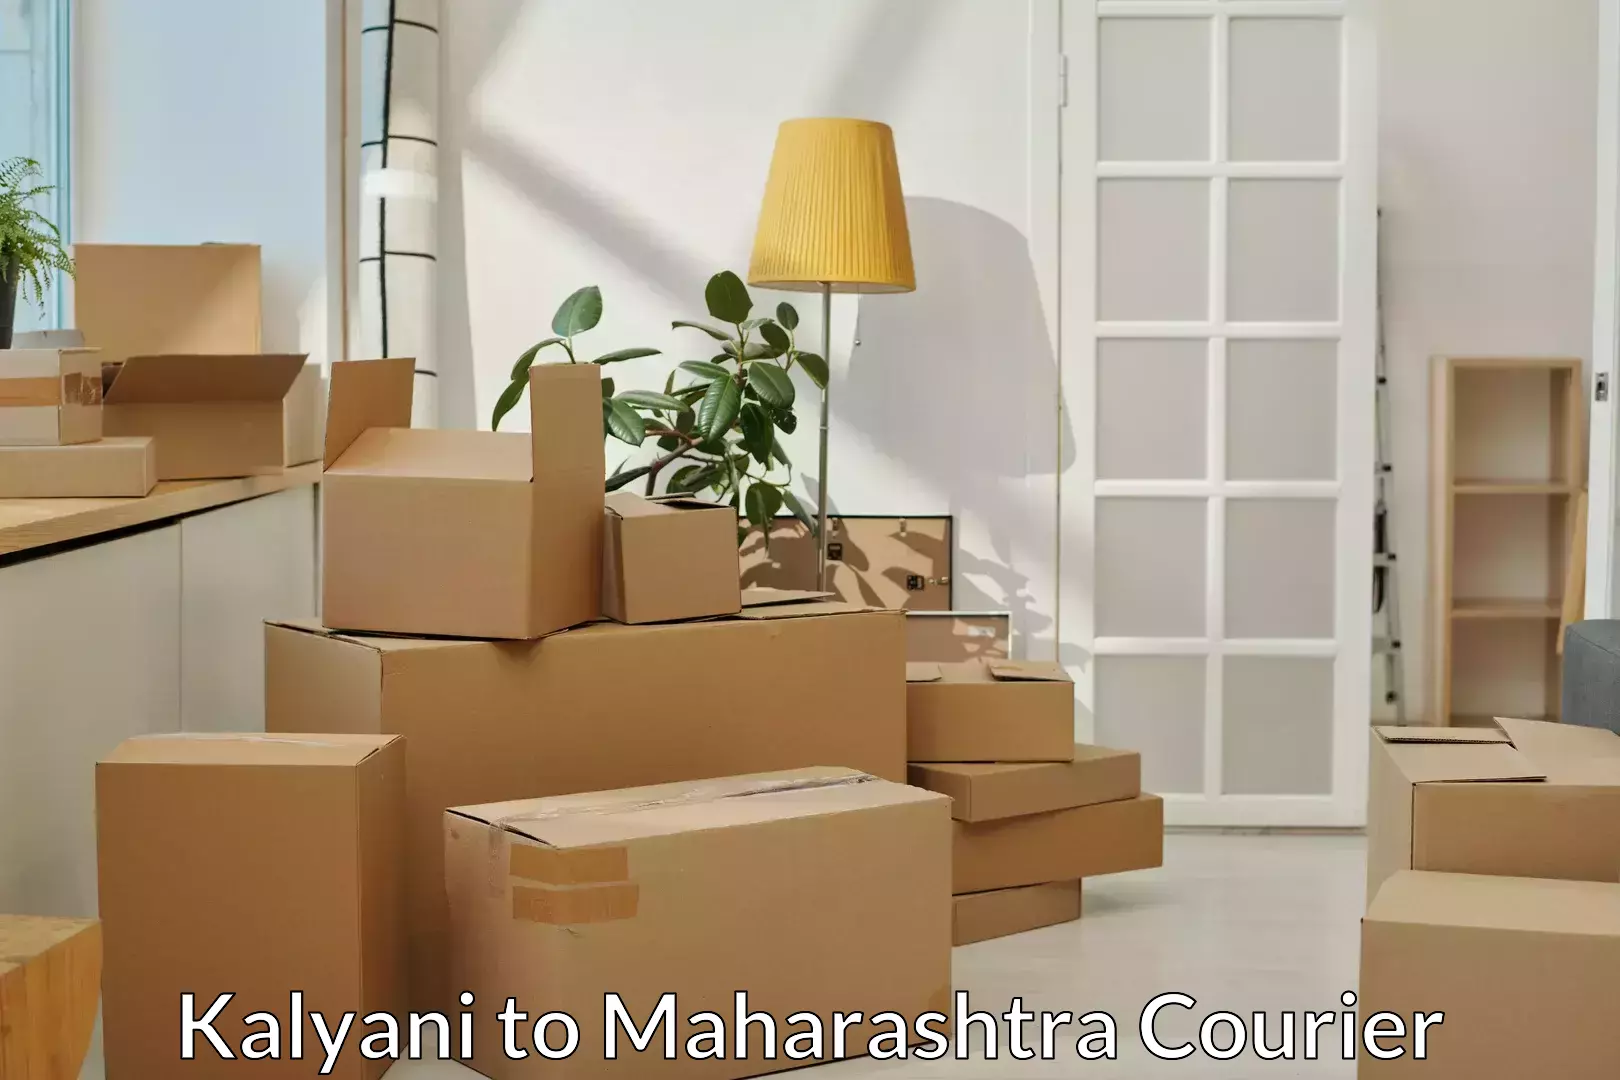 Furniture relocation experts Kalyani to Jamner